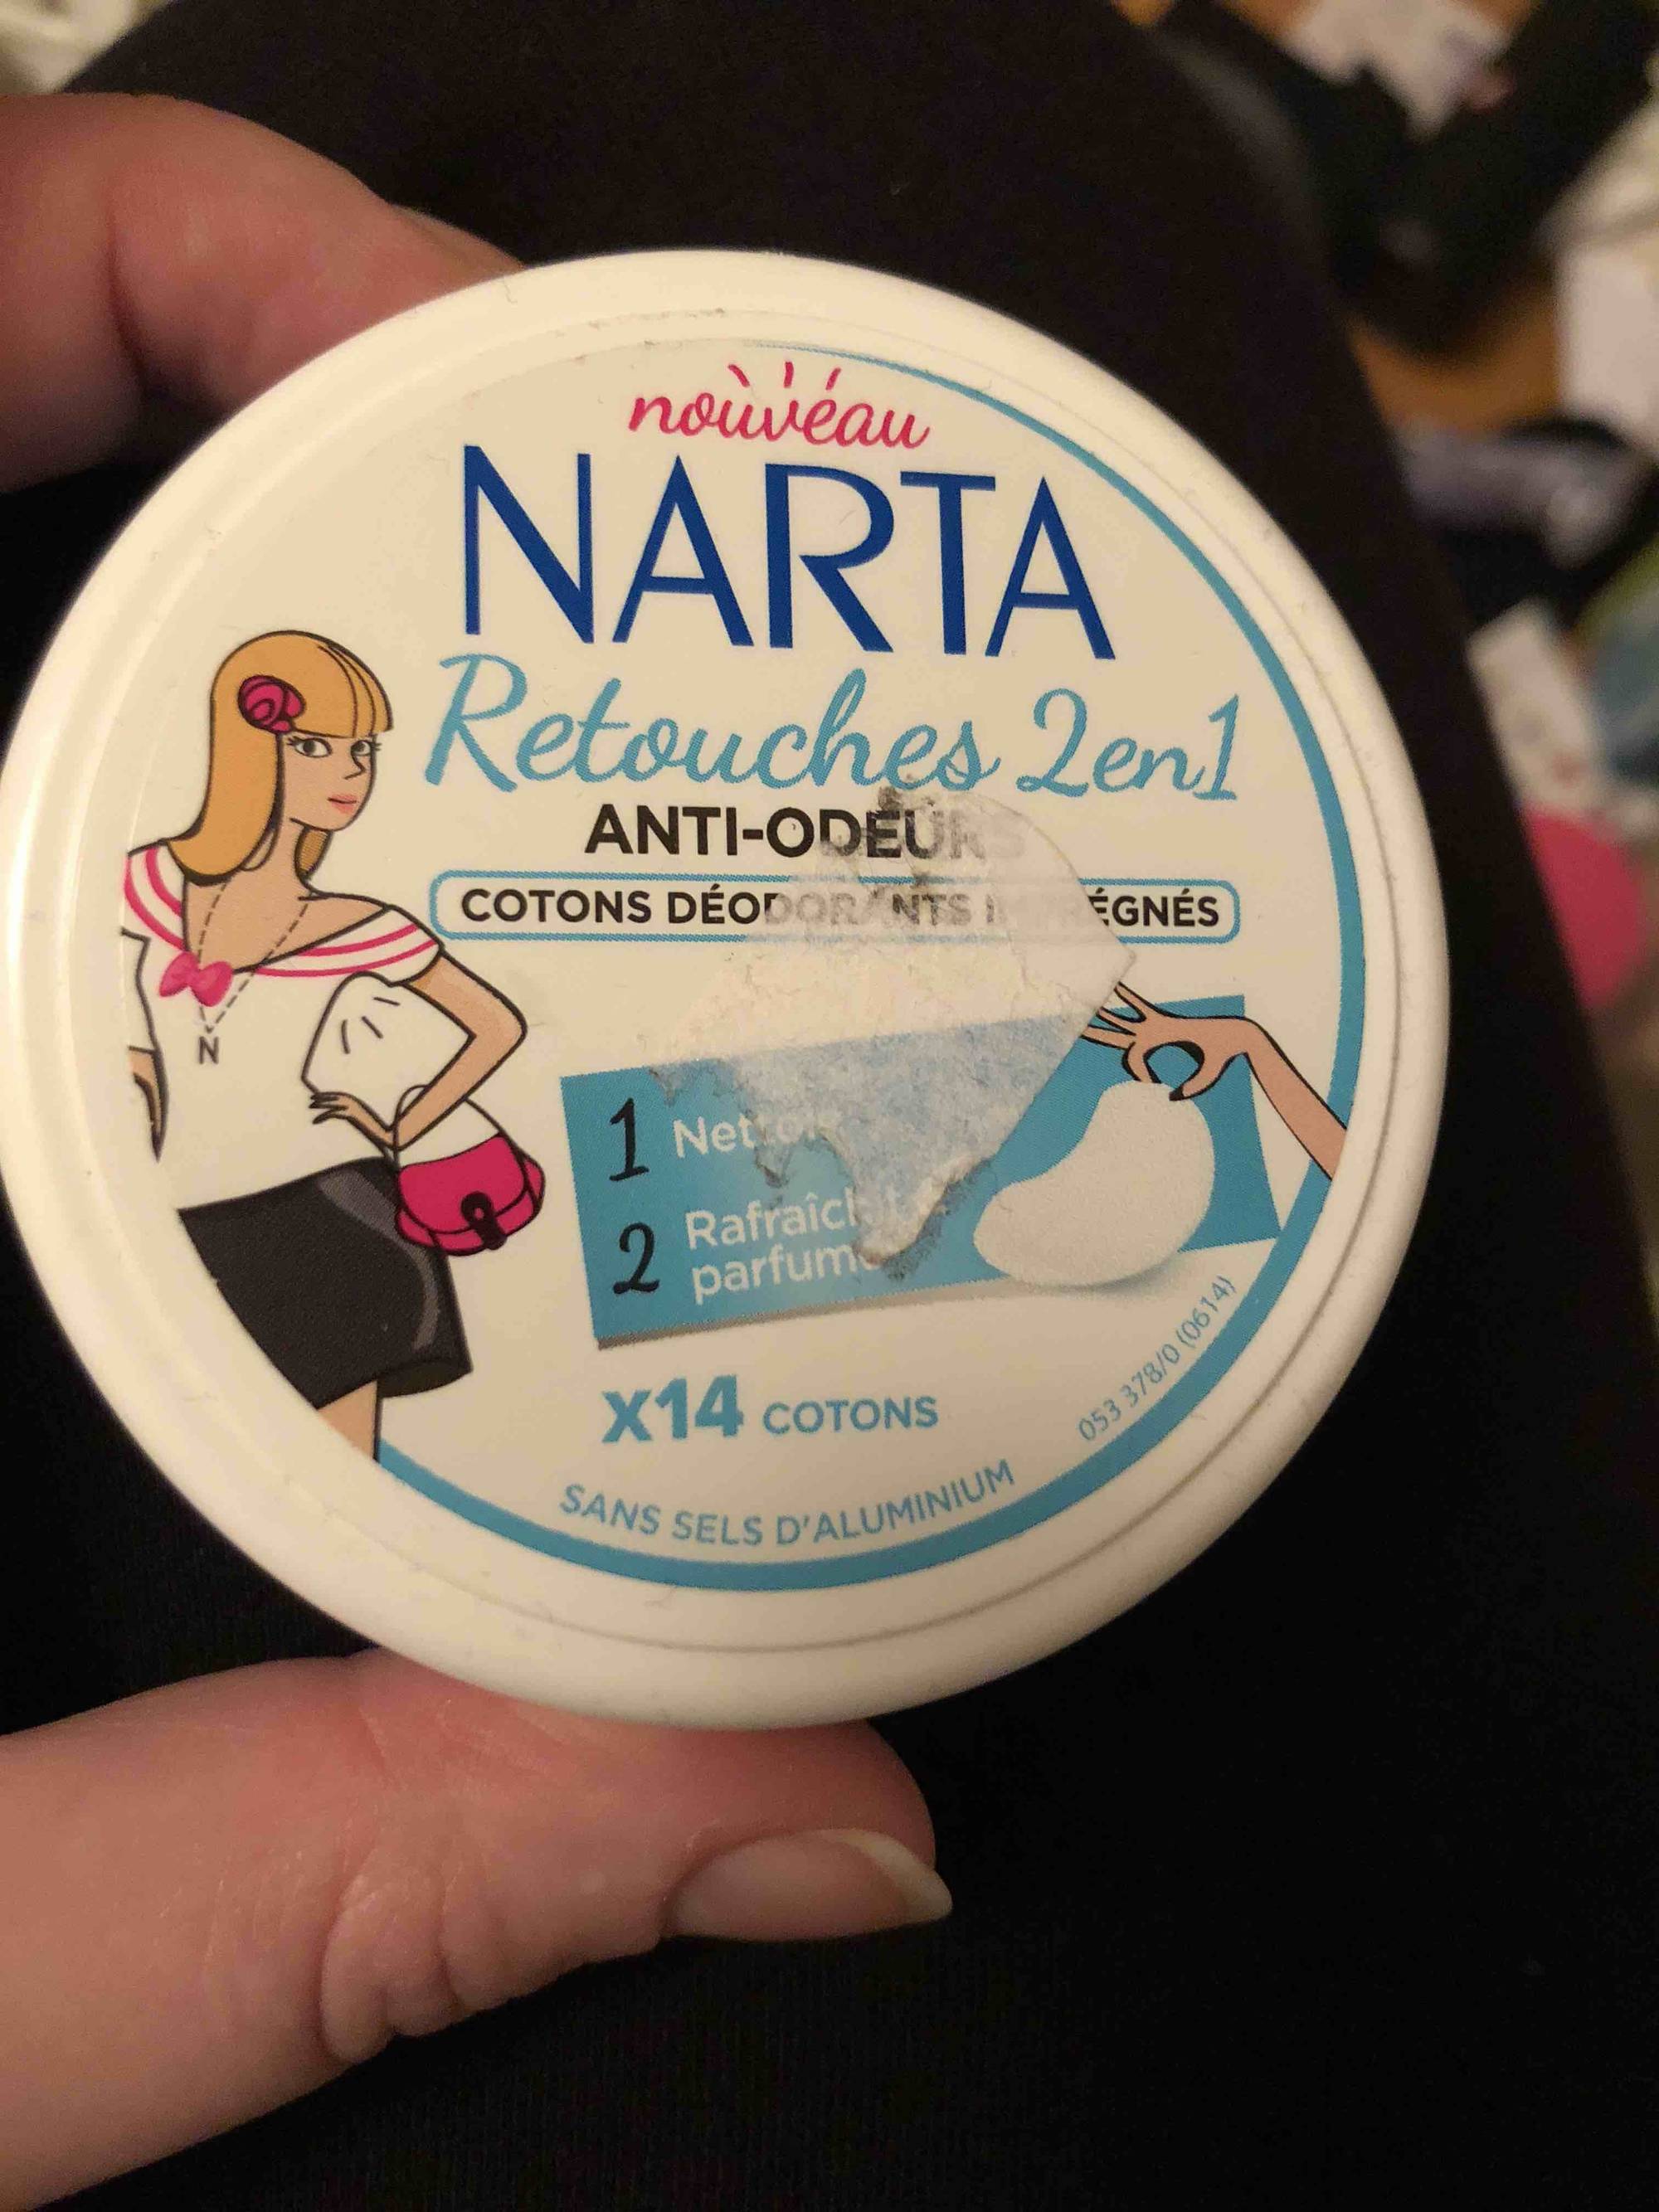 NARTA - Retouche 2 en 1 anti-odeurs - Cotons déodorants imprégnés